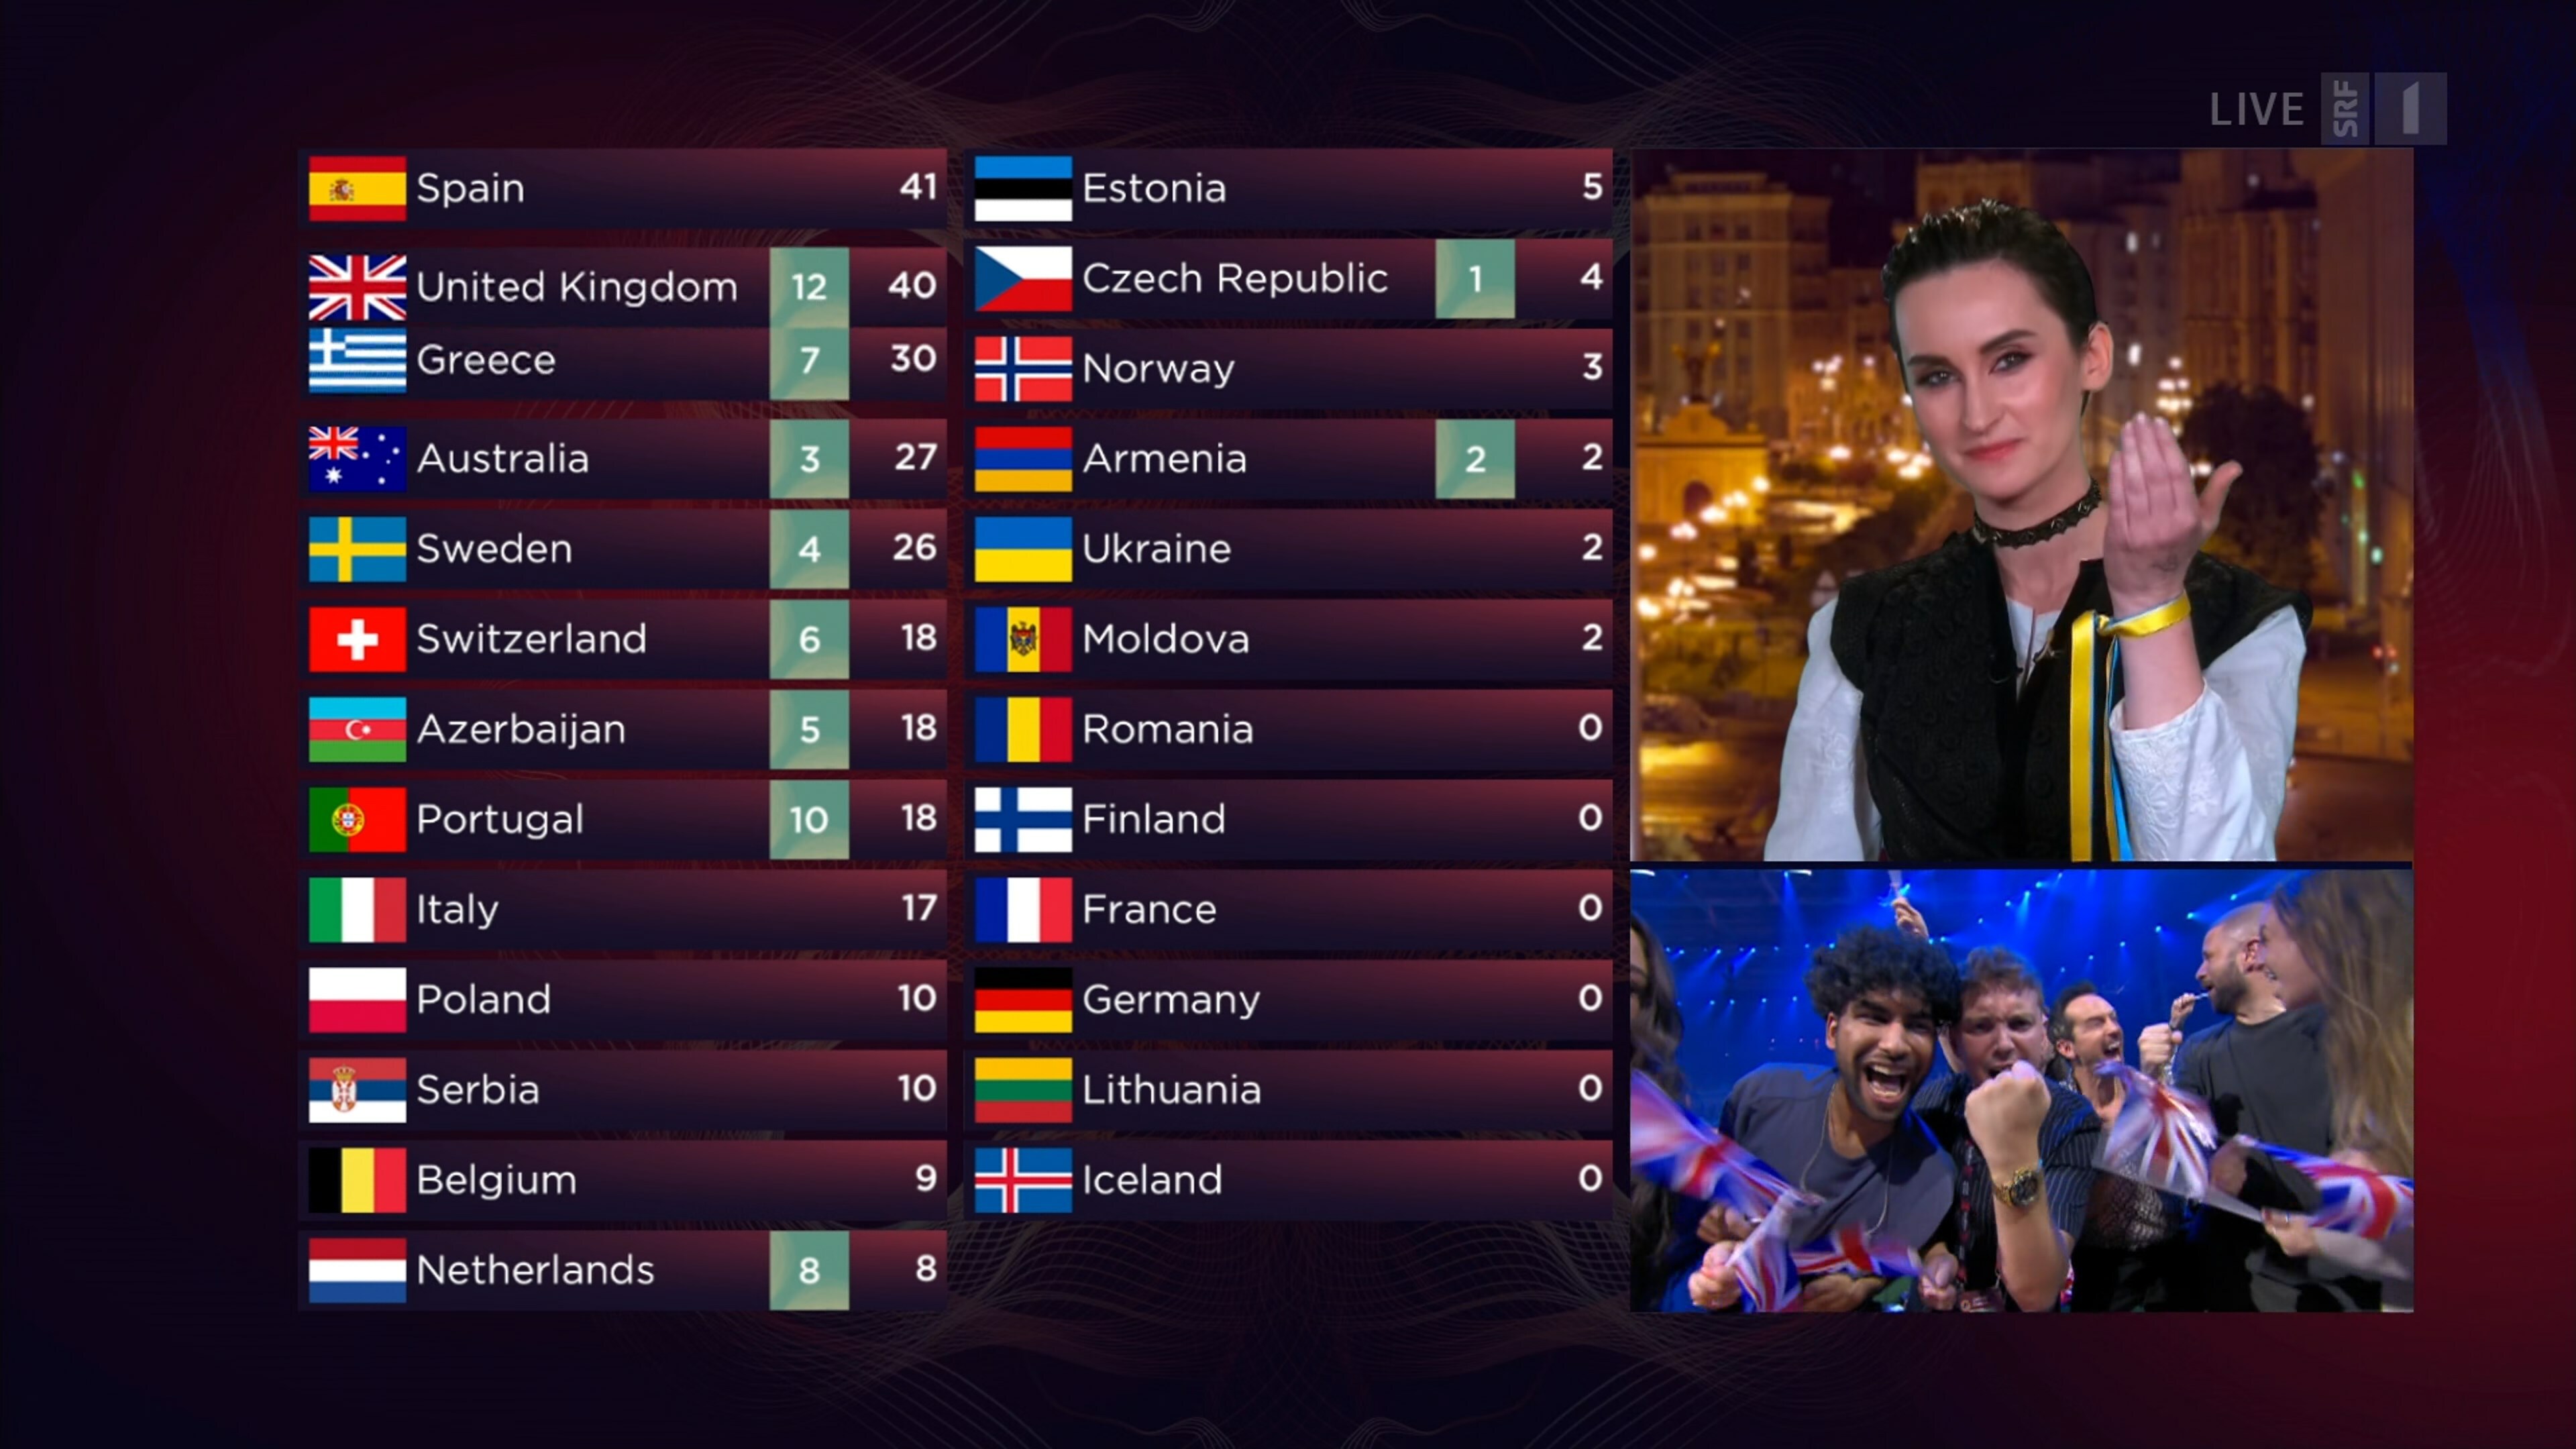 Eurovision.2022.Final.UHDTV.H265.2160p.[Mazepa].mkv_snapshot_02.57.44.300.jpg